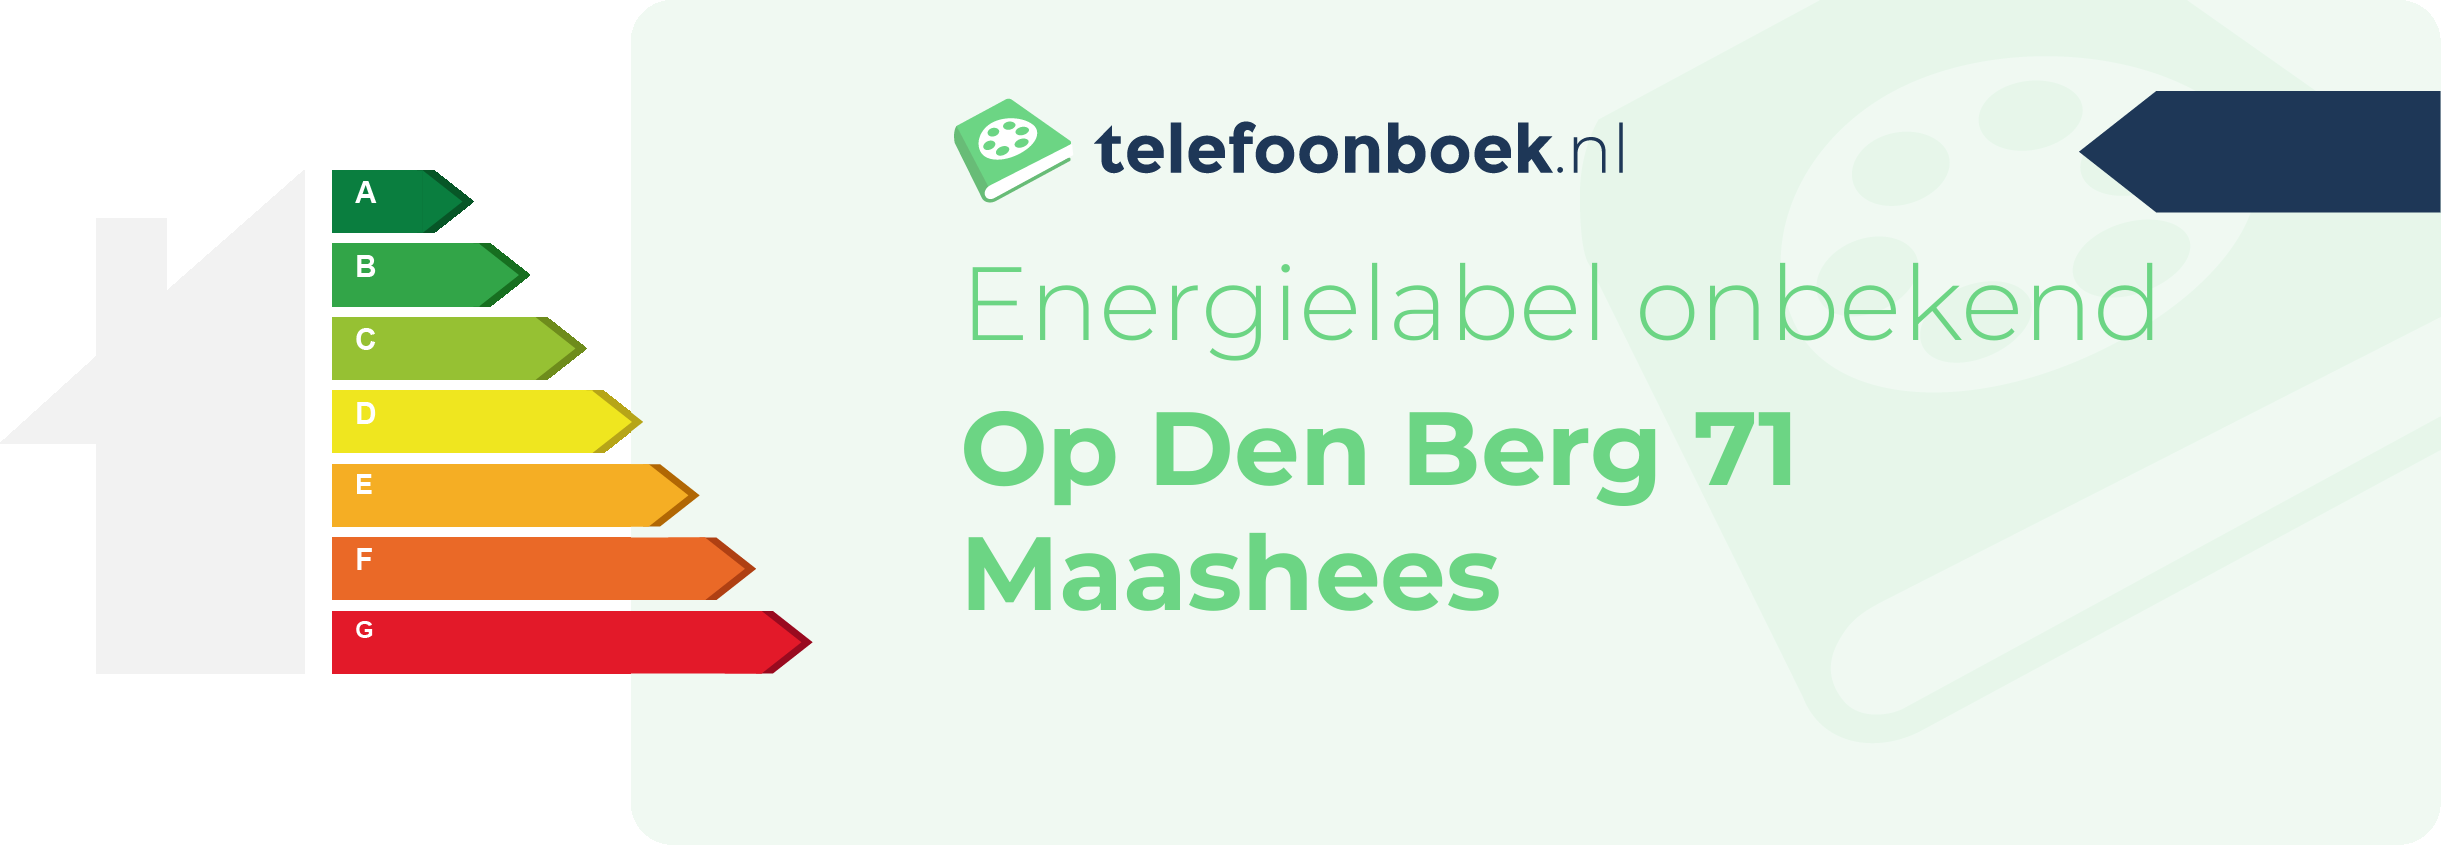 Energielabel Op Den Berg 71 Maashees